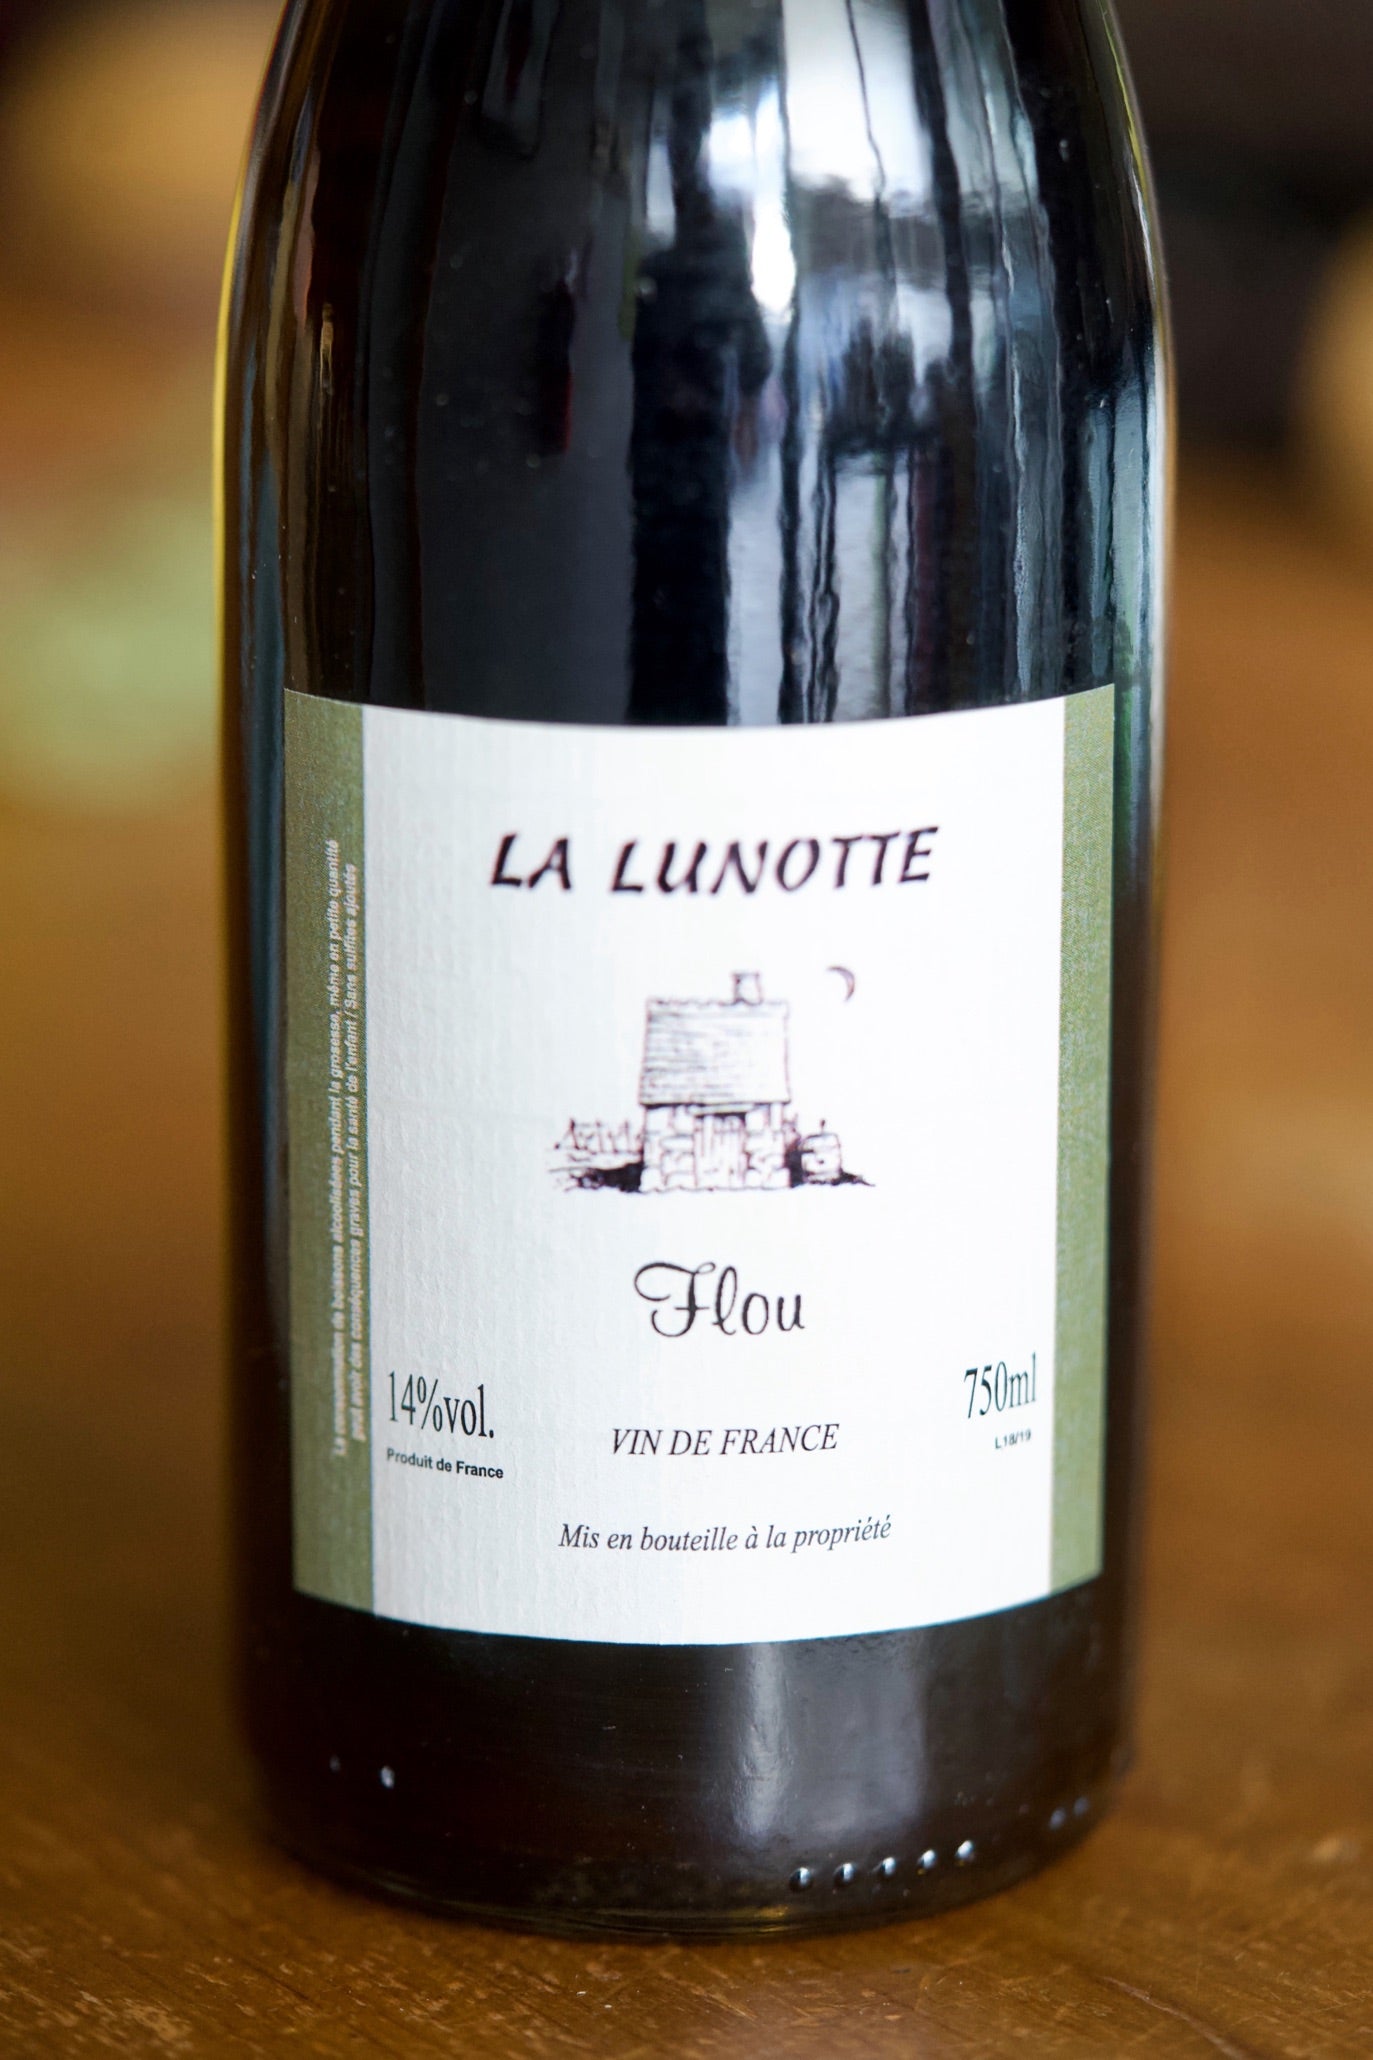 Vin de France Red Cabernet Franc "Flou", La Lunotte 2019